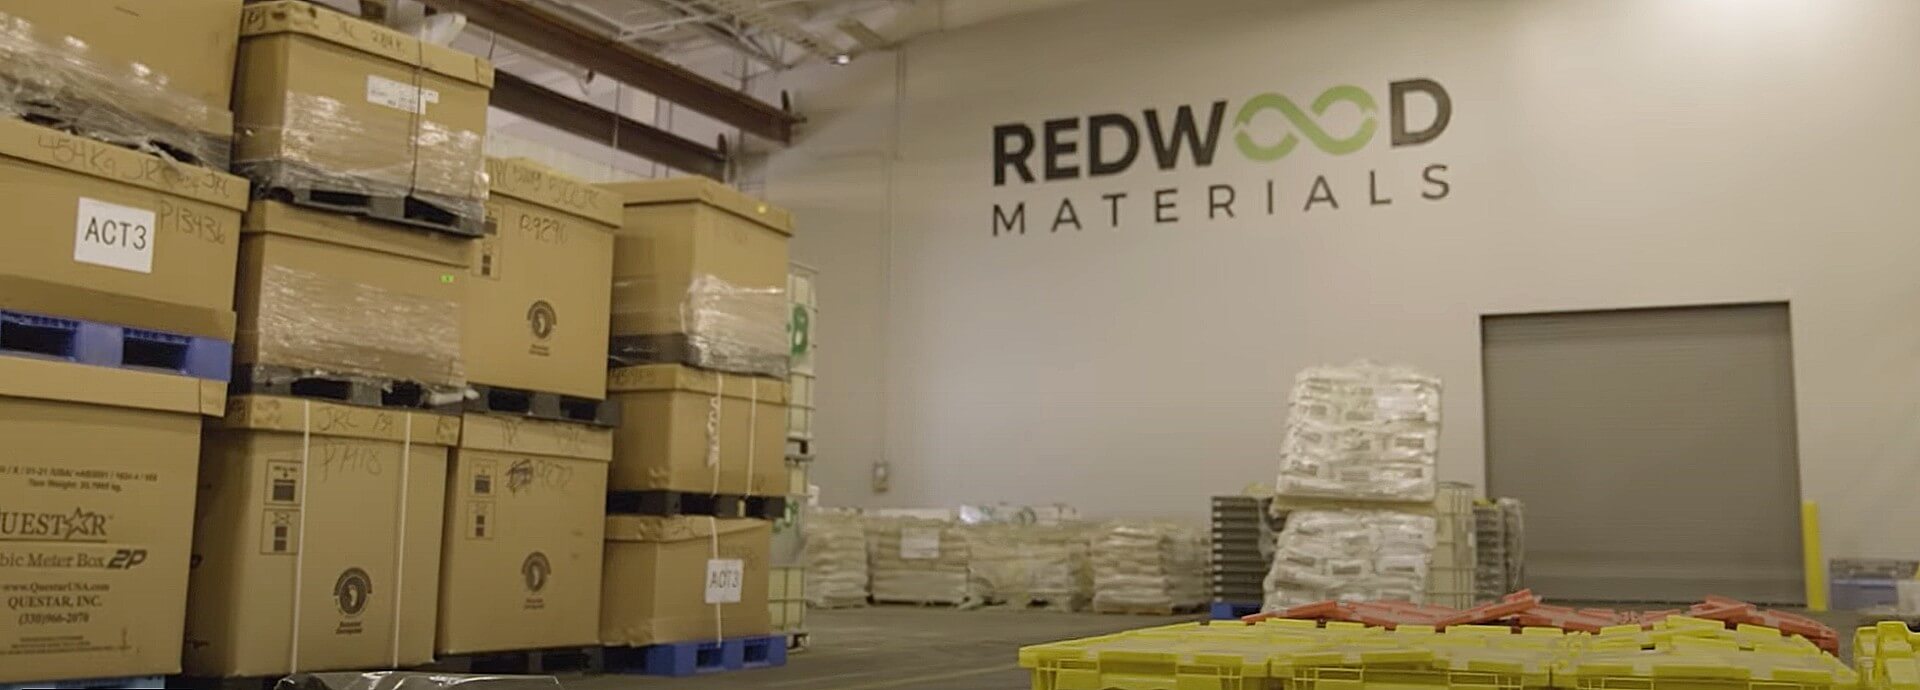 Redwood Materials は 1 億ドルを超える税制優遇措置を承認されました